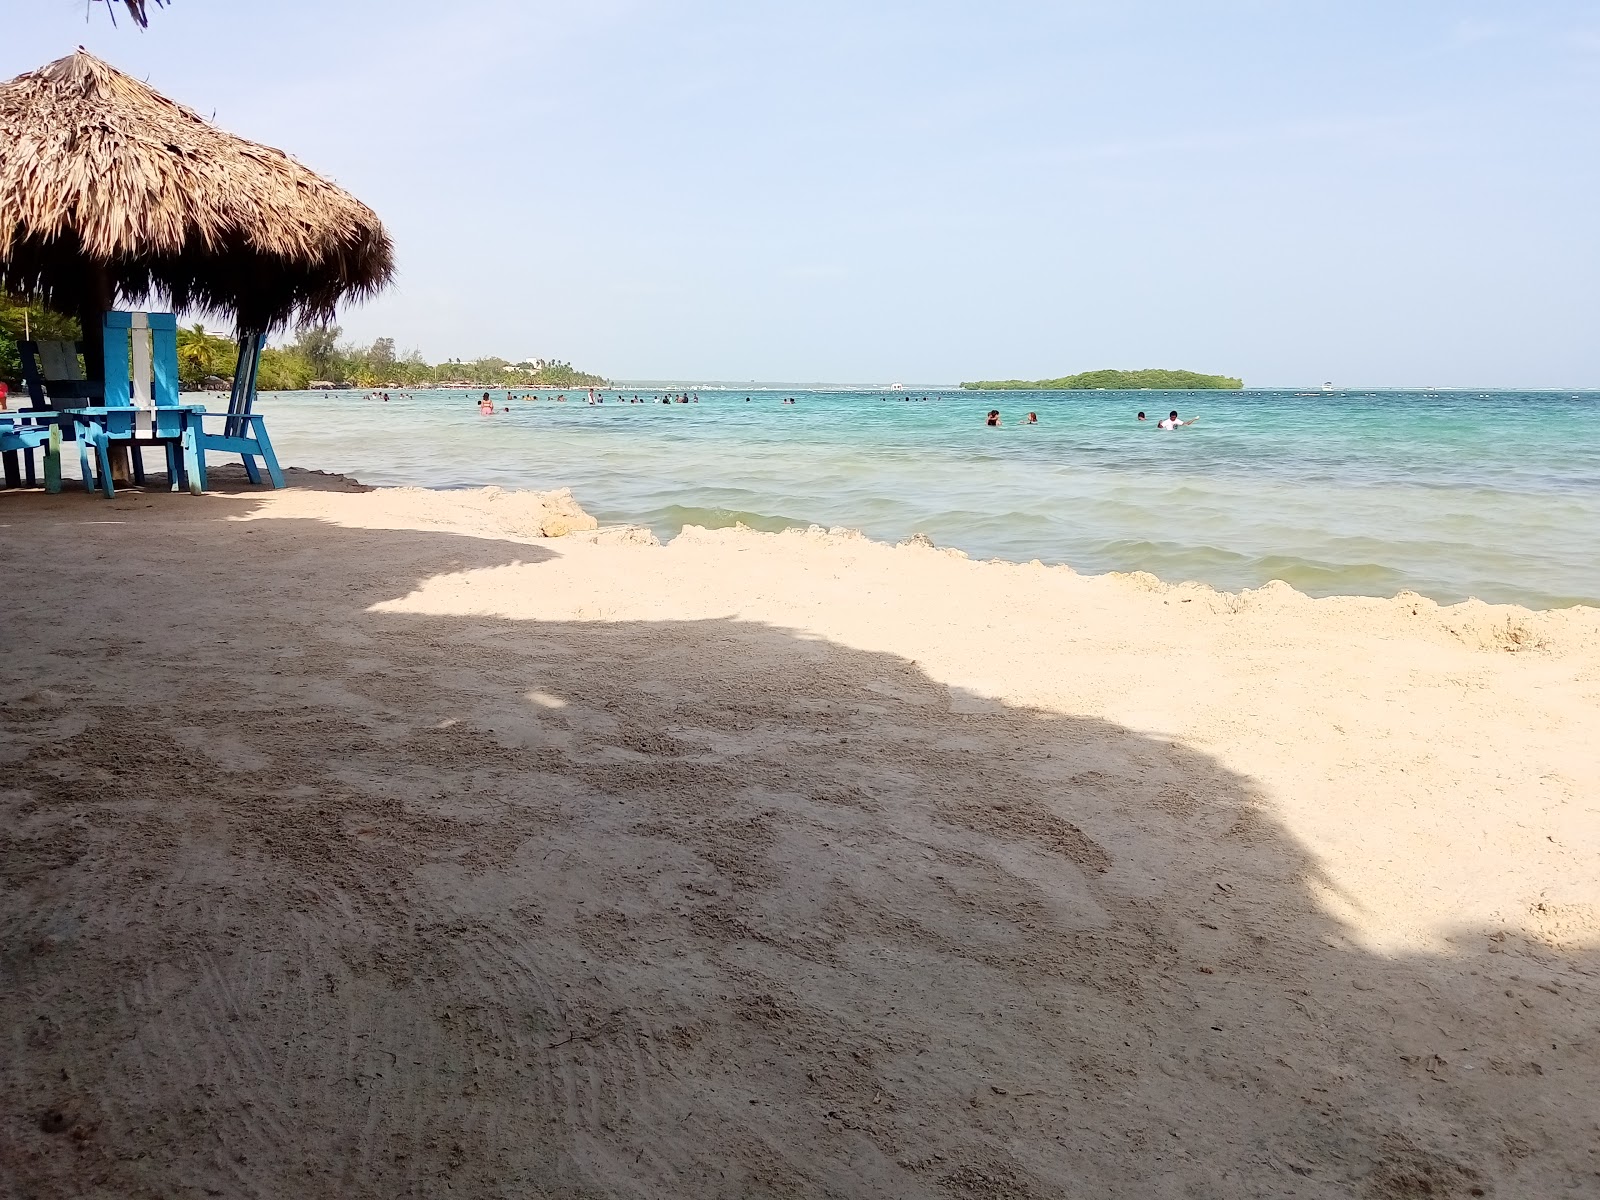 Boca Chica beach II'in fotoğrafı geniş plaj ile birlikte